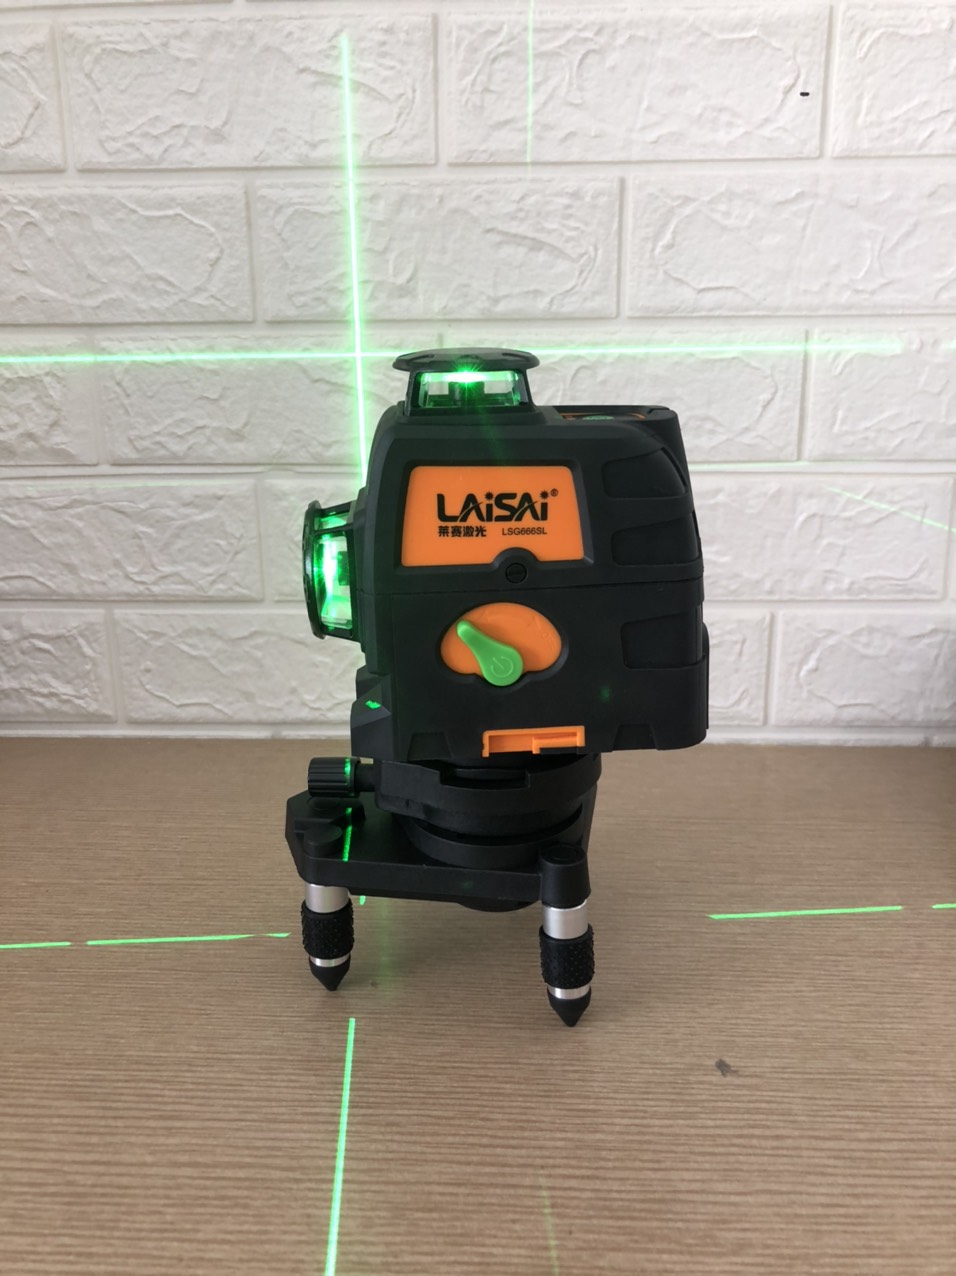 may-can-bang-laser-laisai